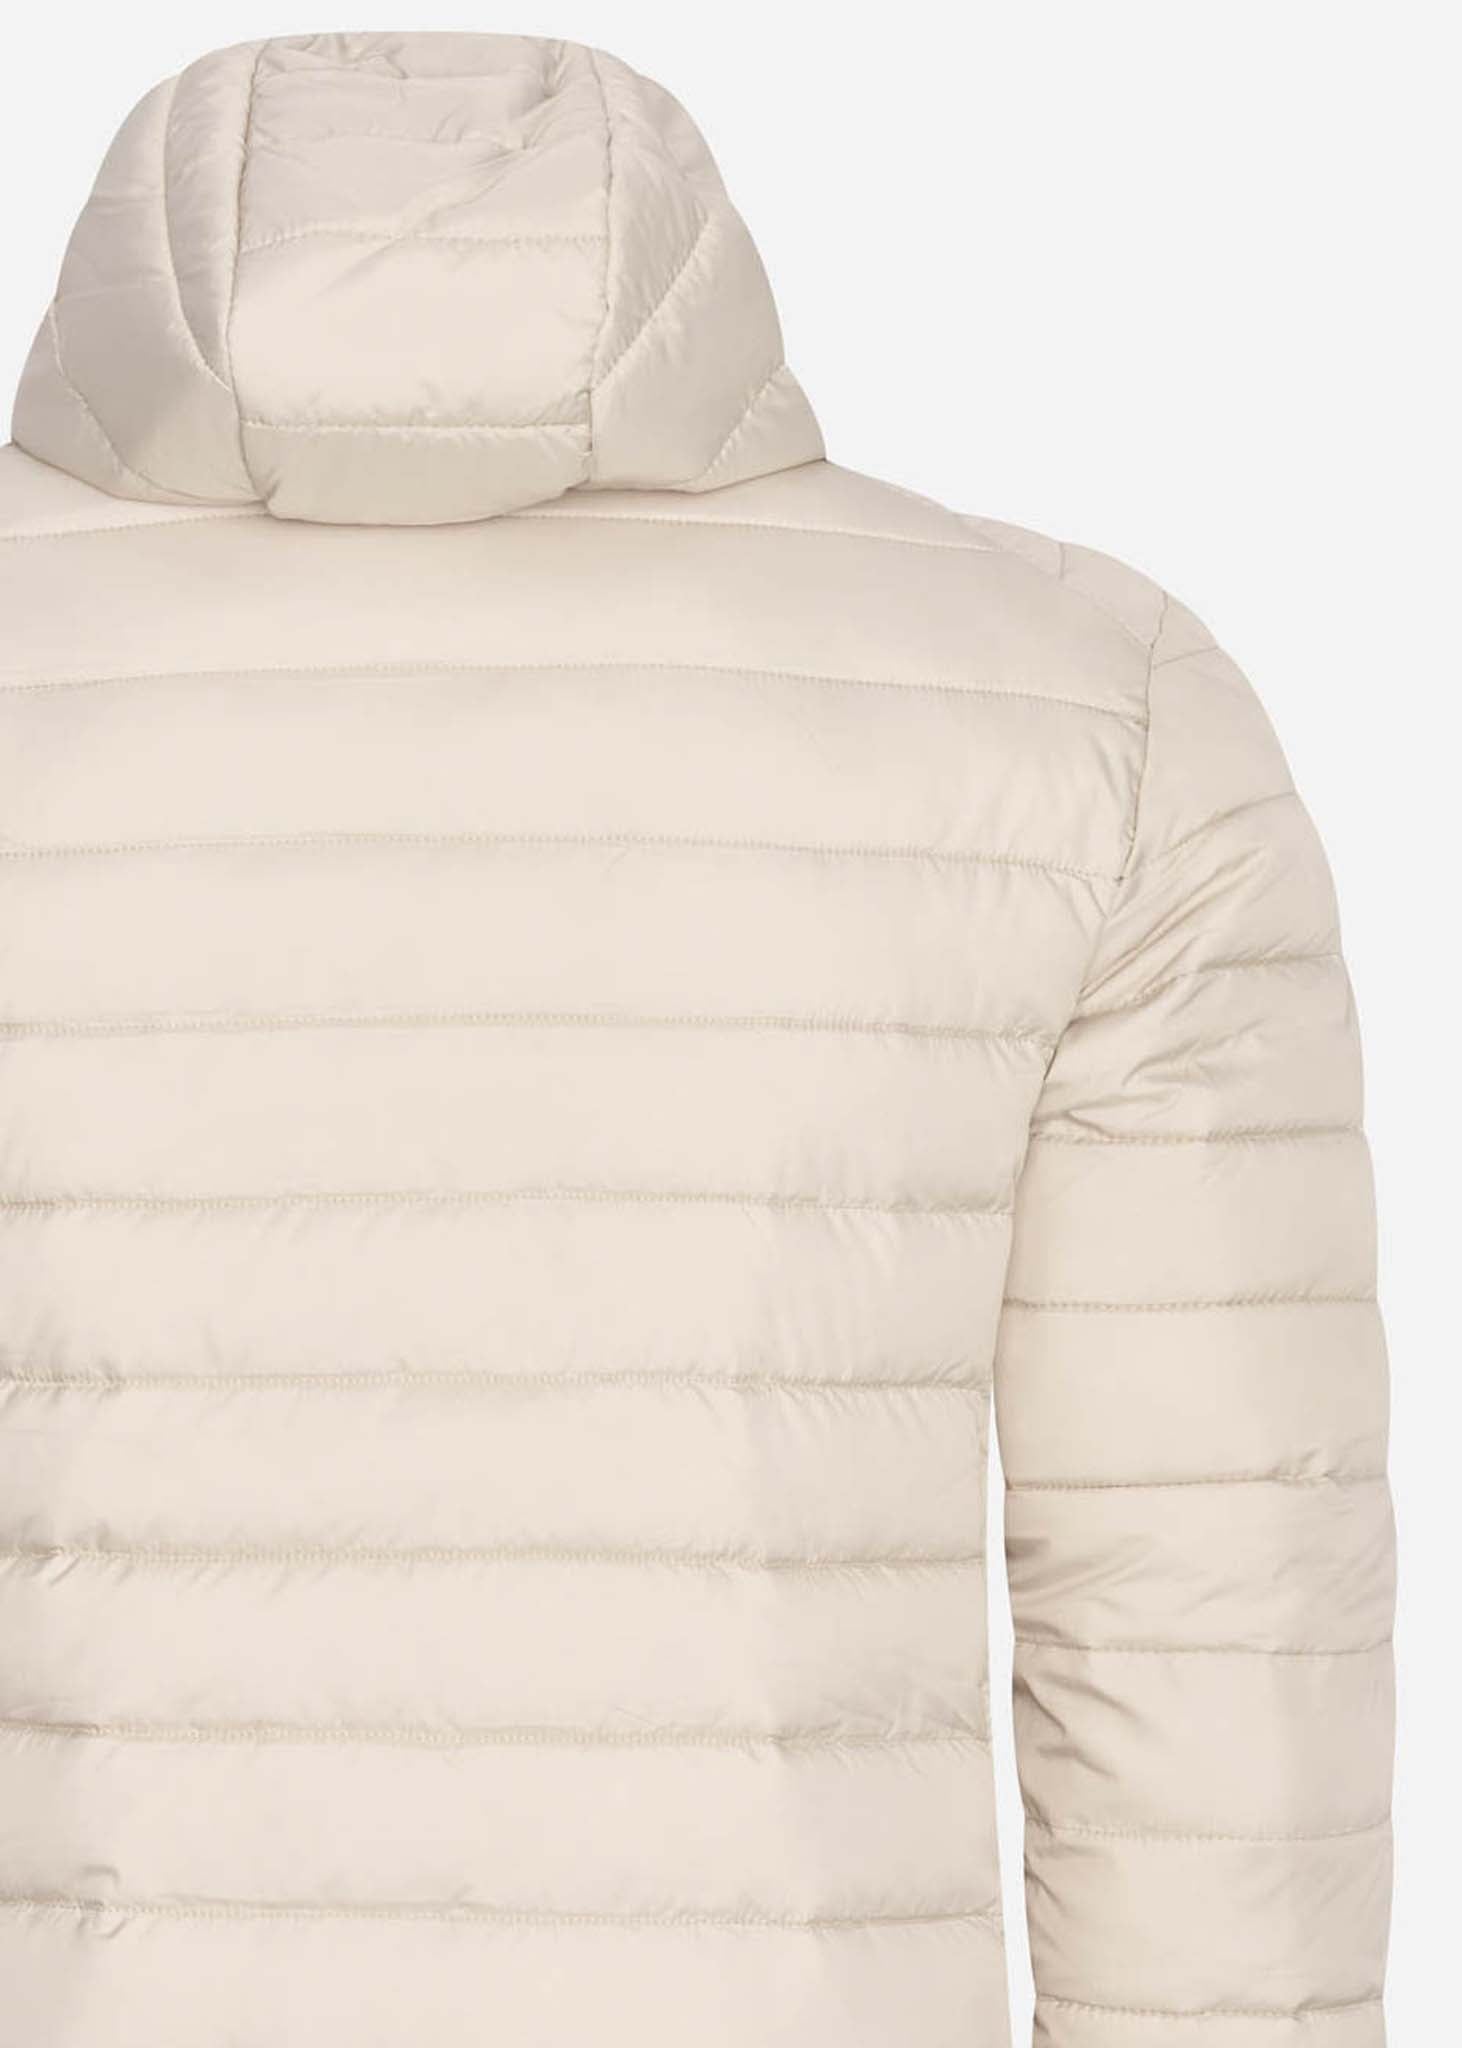 Lombardy padded jacket - beige - Ellesse